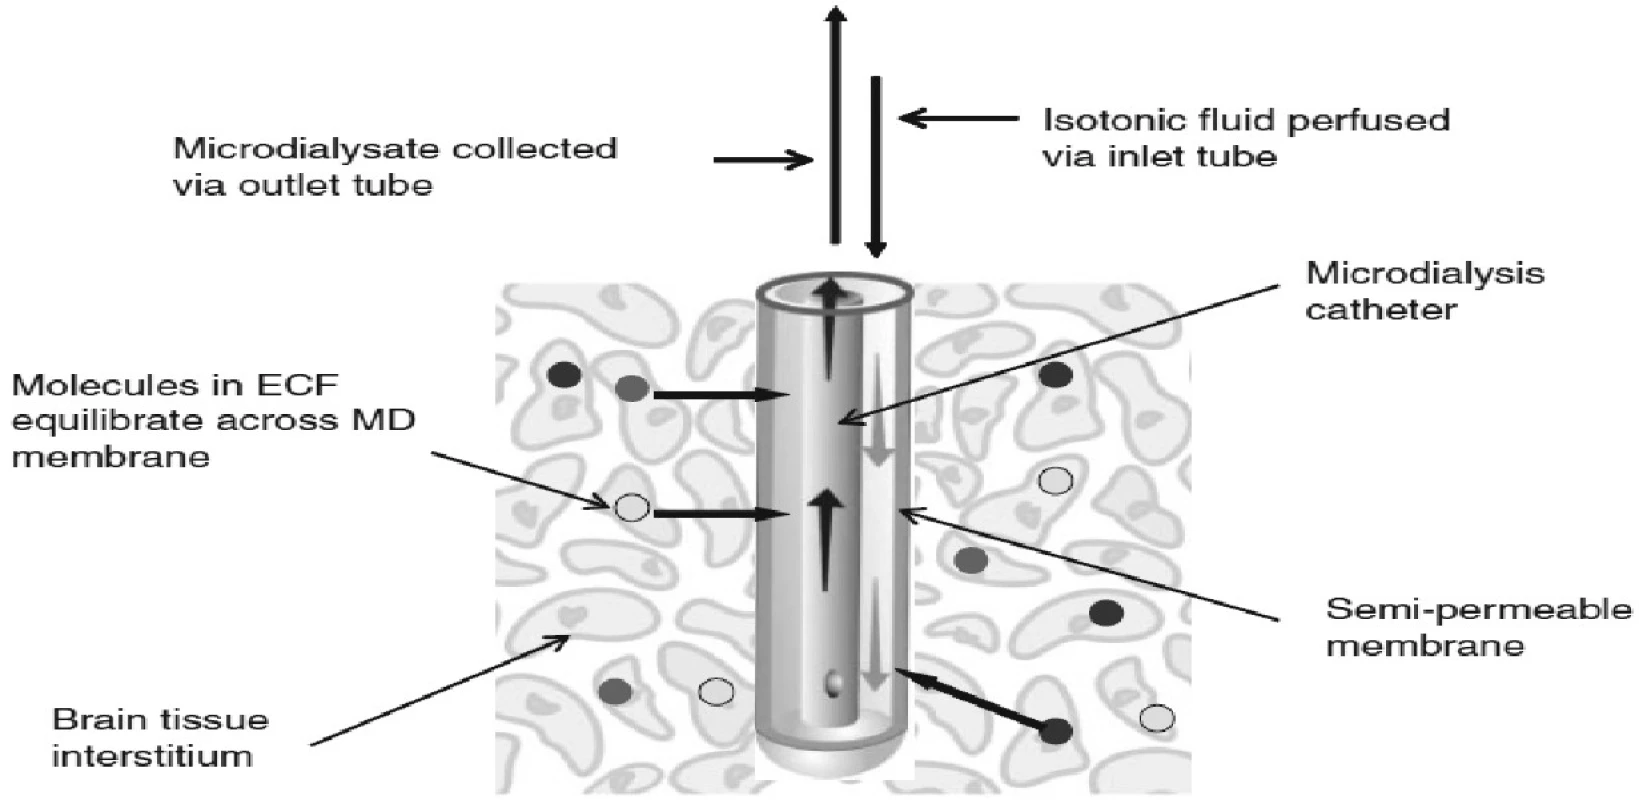 Princip mikrodialýzy a zapojení mikrodialyzačního katétru – schéma (firemní dokumentace)